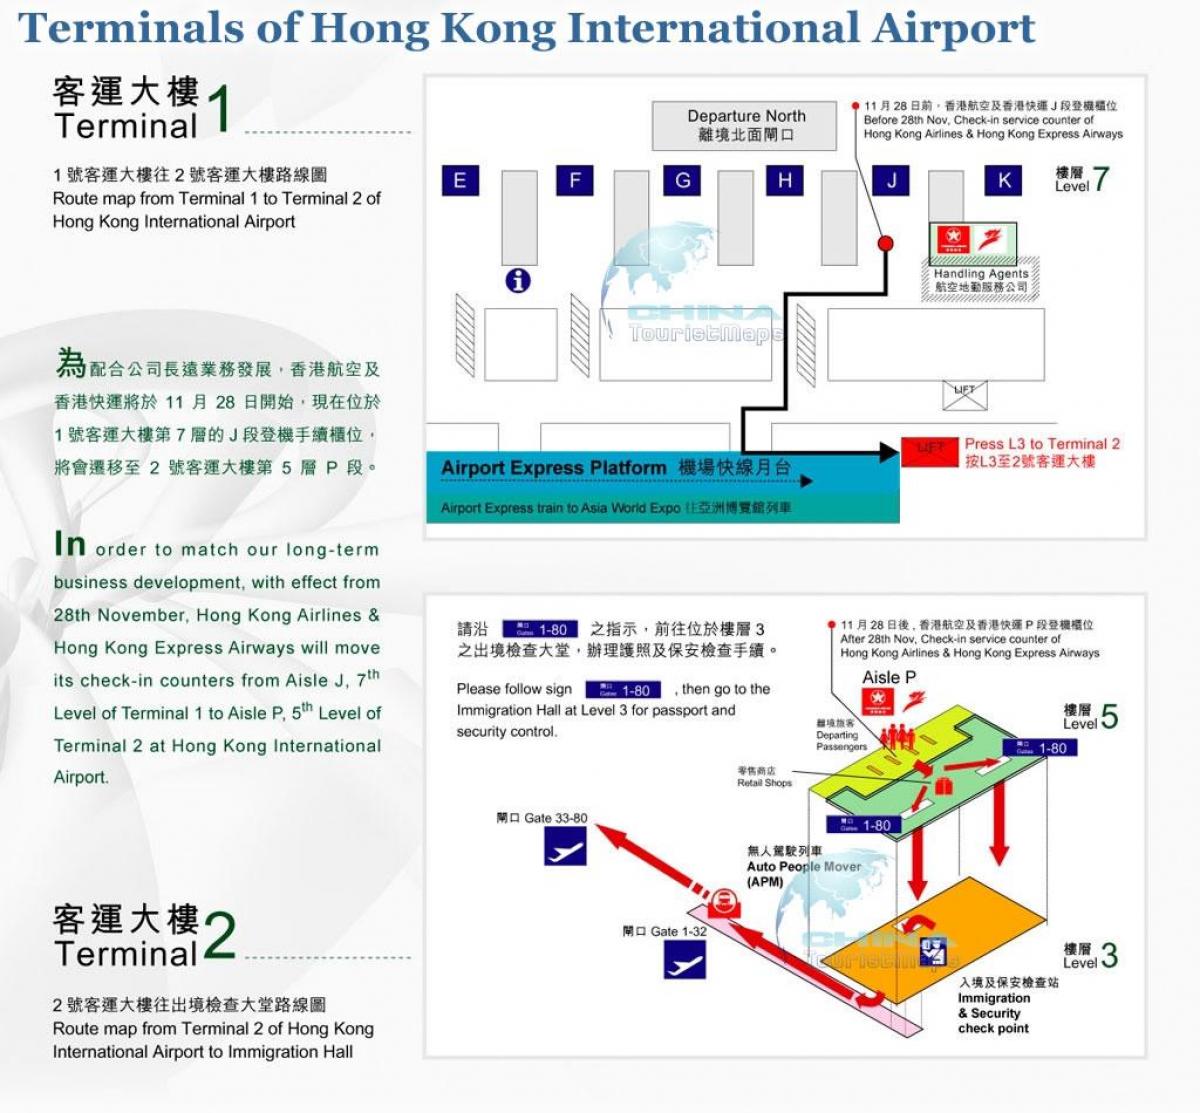 ہانگ کانگ ہوائی اڈے کے ٹرمینل 2 نقشہ